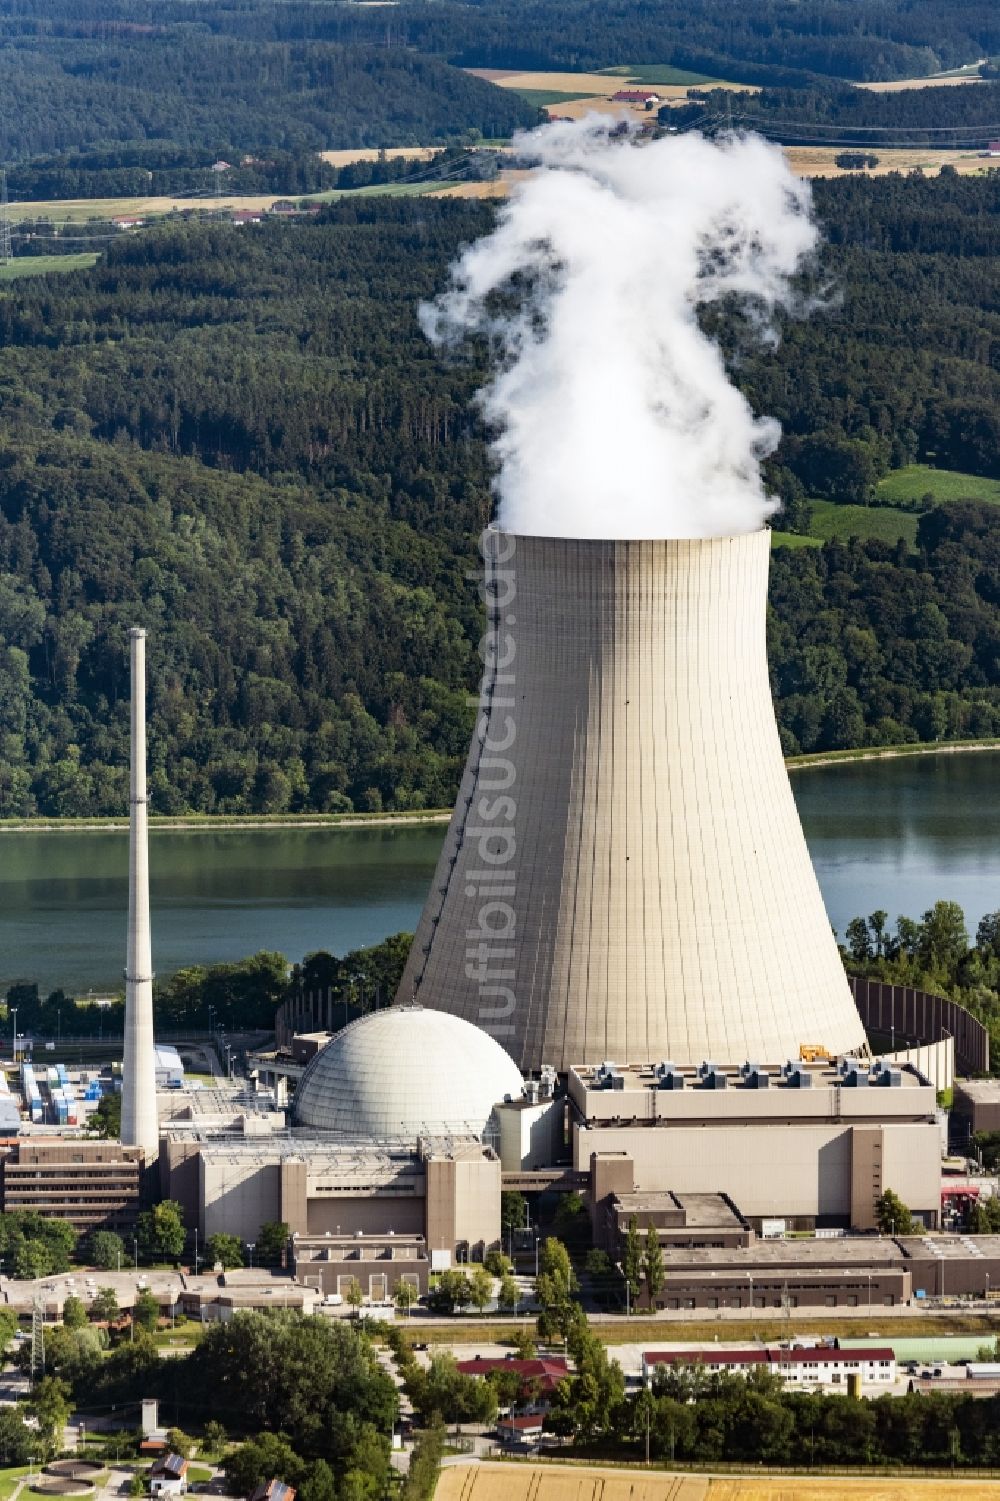 Essenbach von oben - Reaktorblöcke und Anlagen des AKW - KKW Kernkraftwerk in Essenbach im Bundesland Bayern, Deutschland